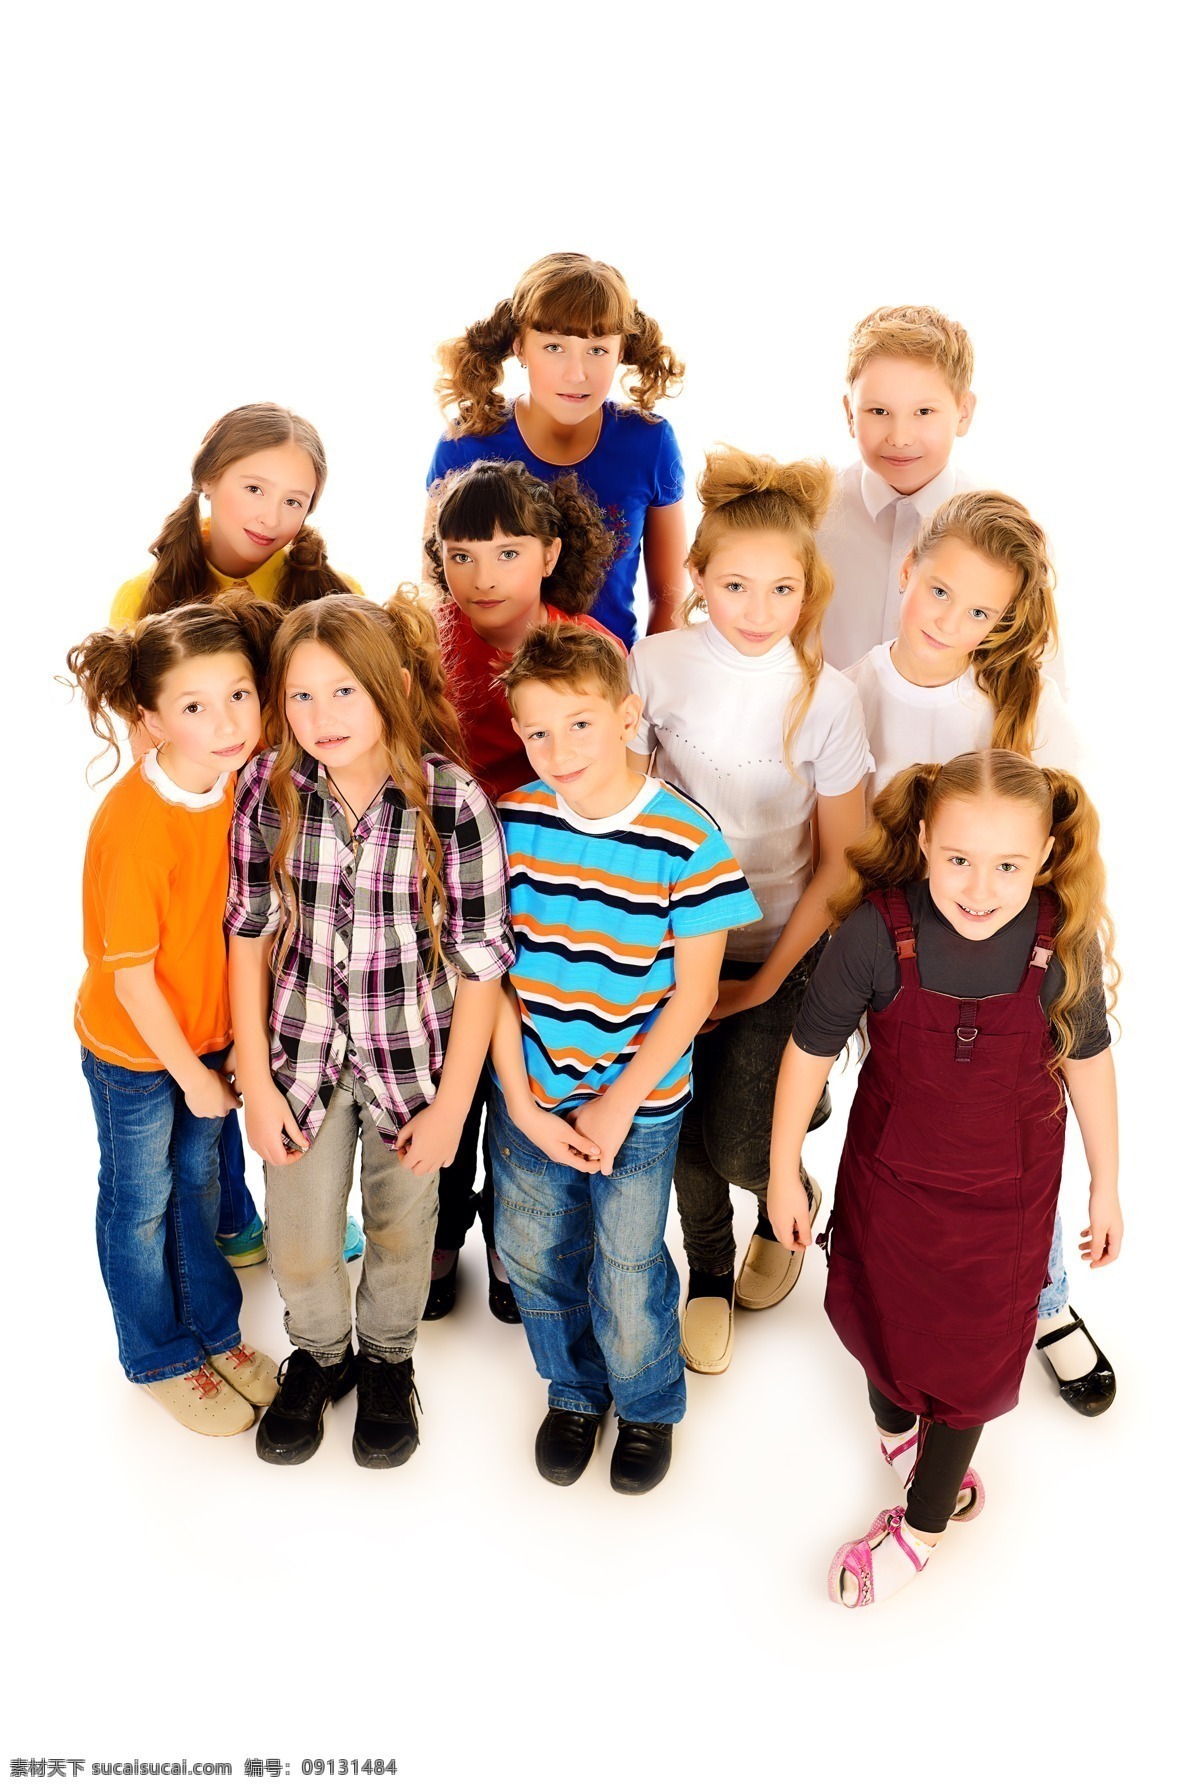 一群 外国 小孩 外国小孩 儿童 人物 外国人物 生活人物 人物图片